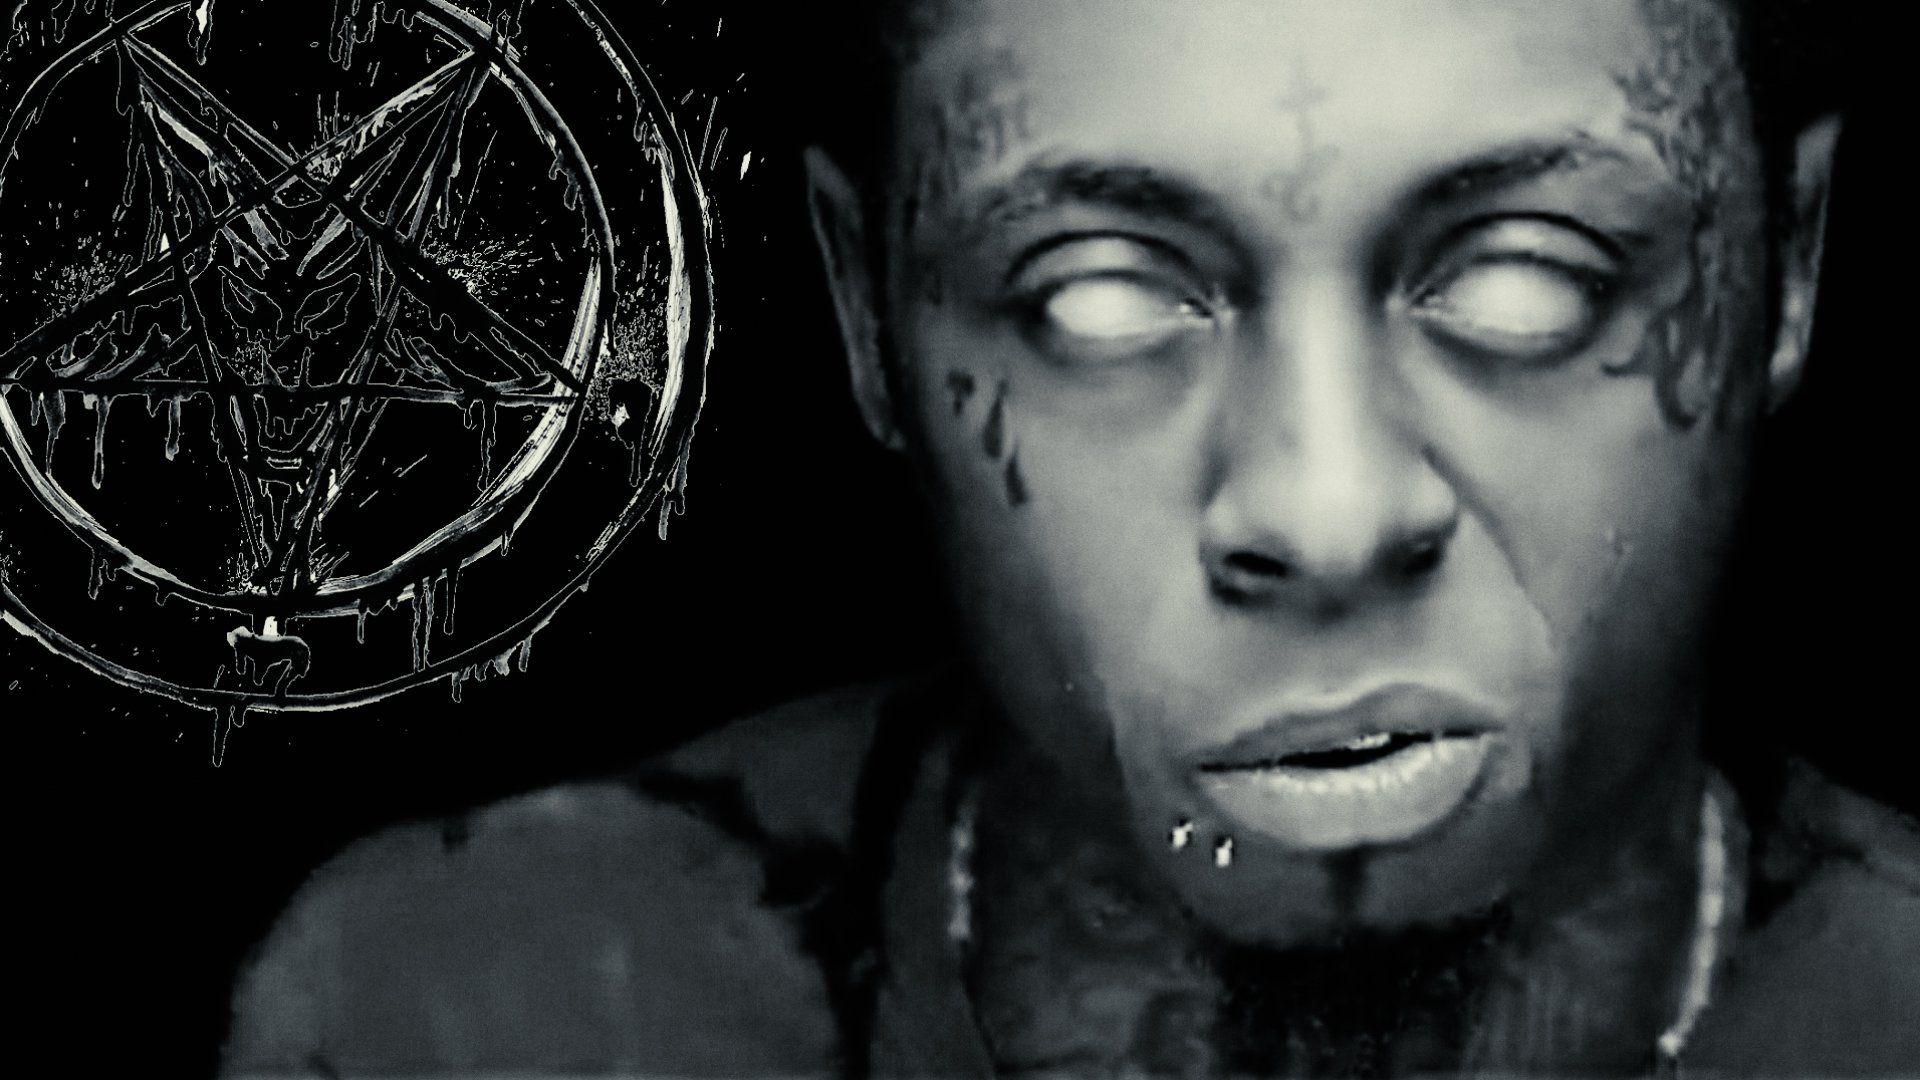 Lil Wayne Wallpaper, 48 Best HD Picture of Lil Wayne, FHDQ Lil